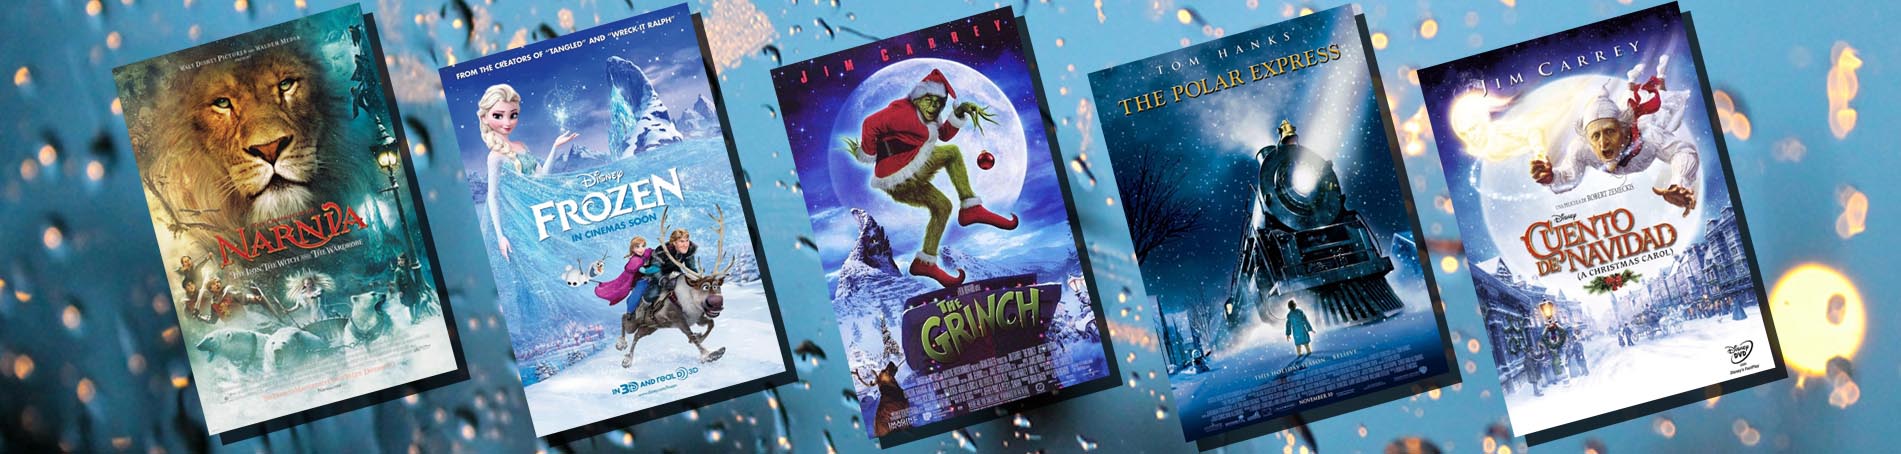 Adaptaciones cinematográficas para disfrutar en Navidad